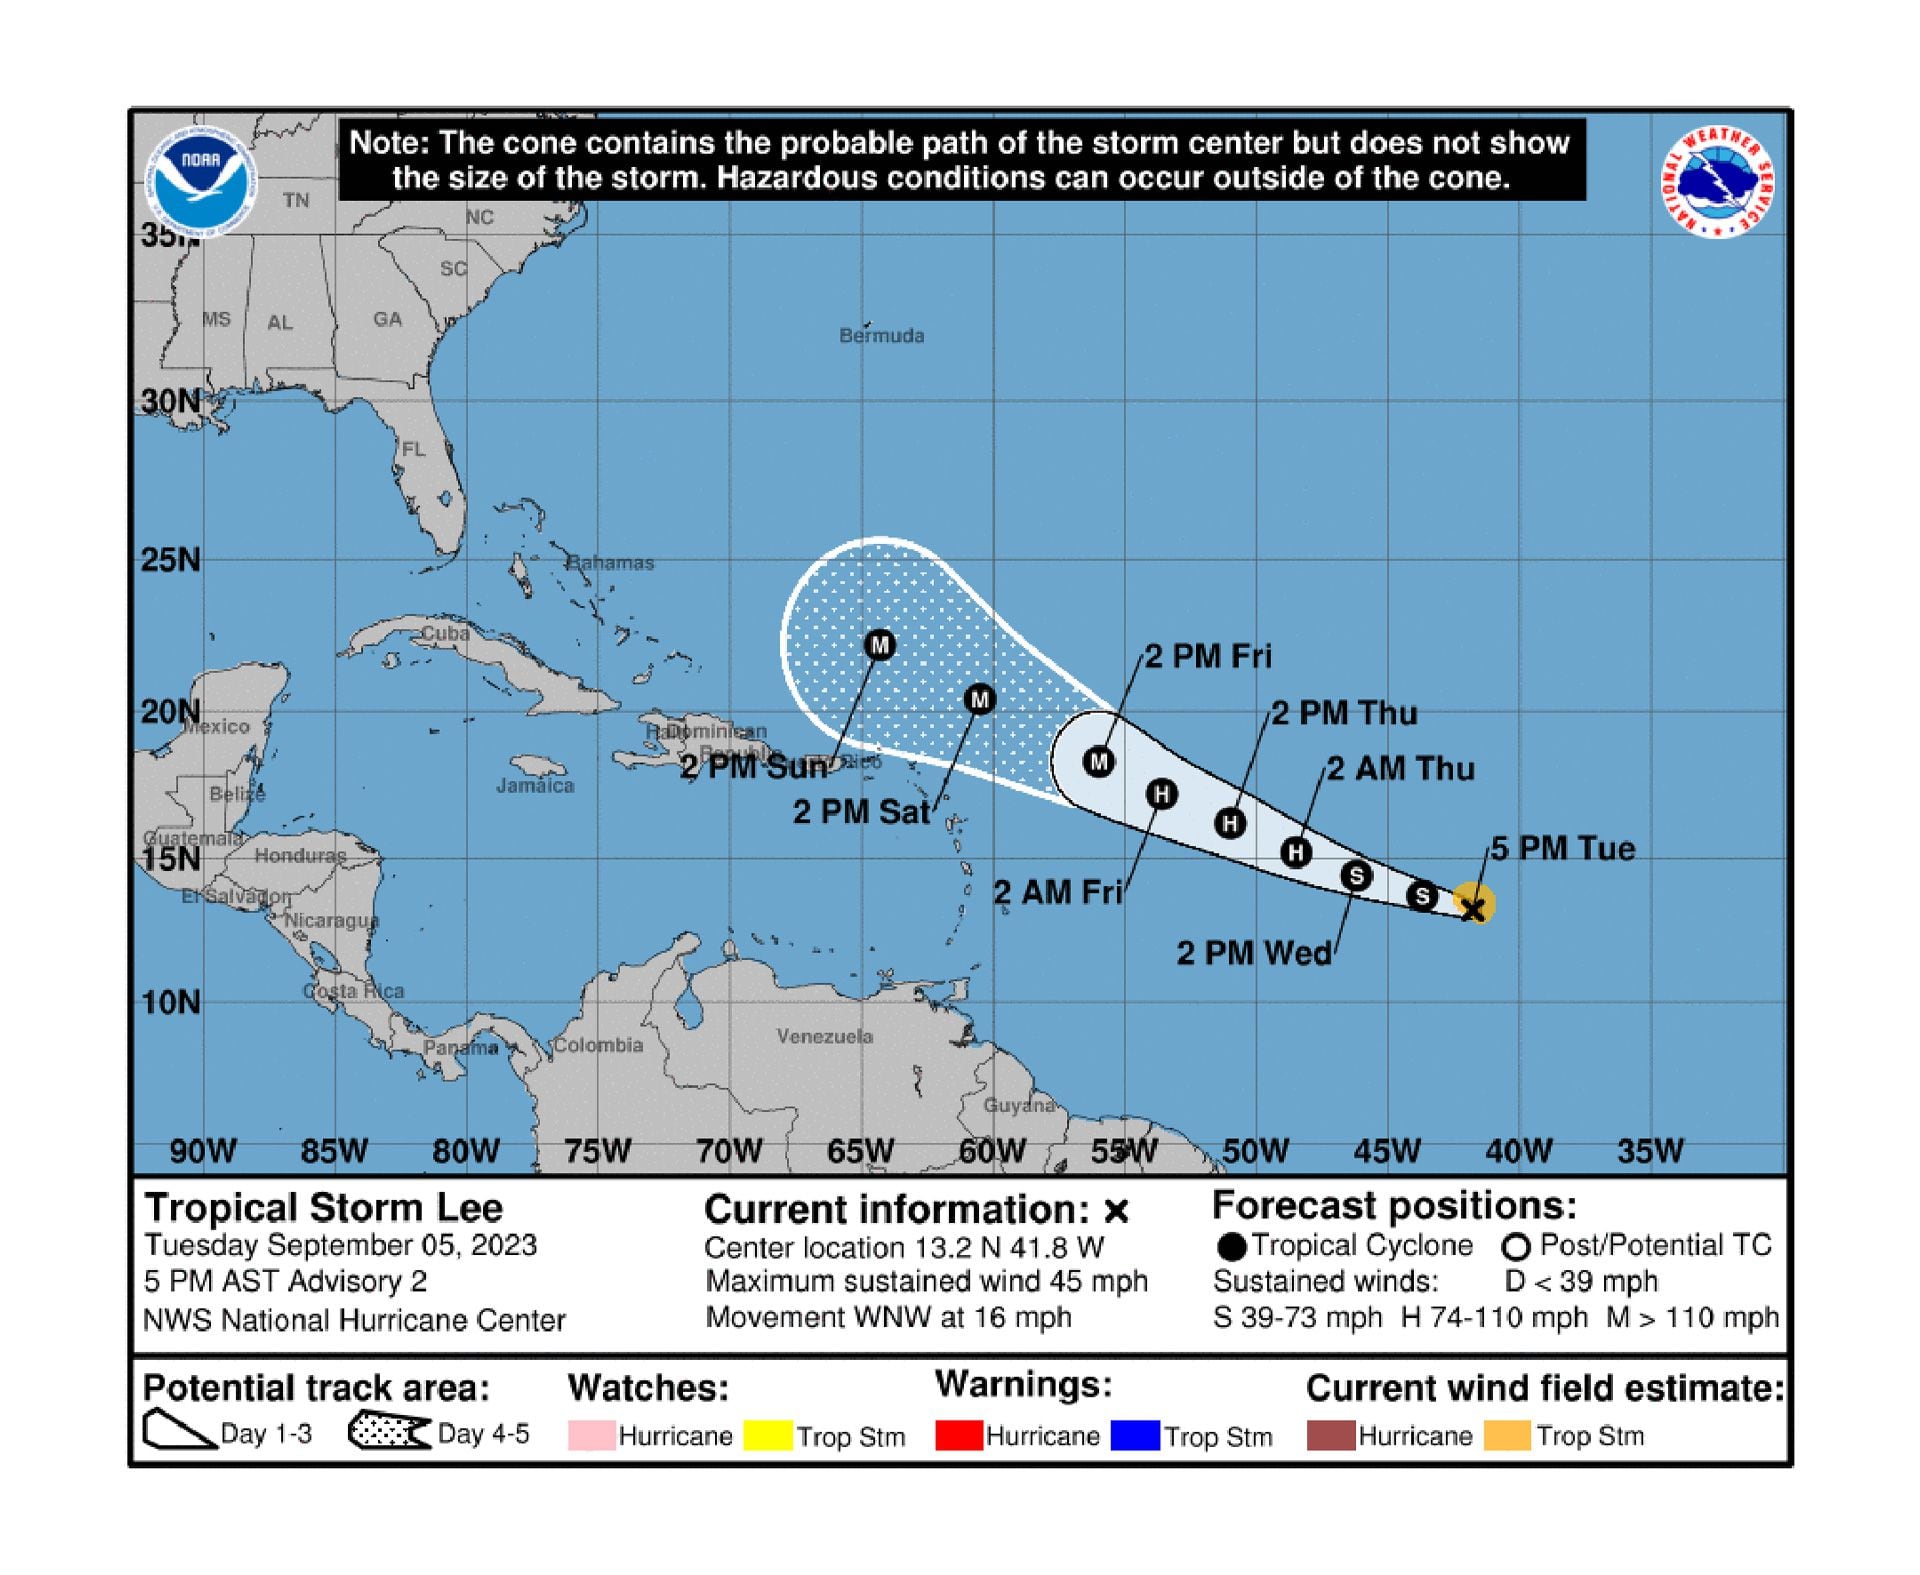 Las previsiones del recorrido de la tormenta Lee según el Centro de Huracanes de los Estados Unidos (NOAA)